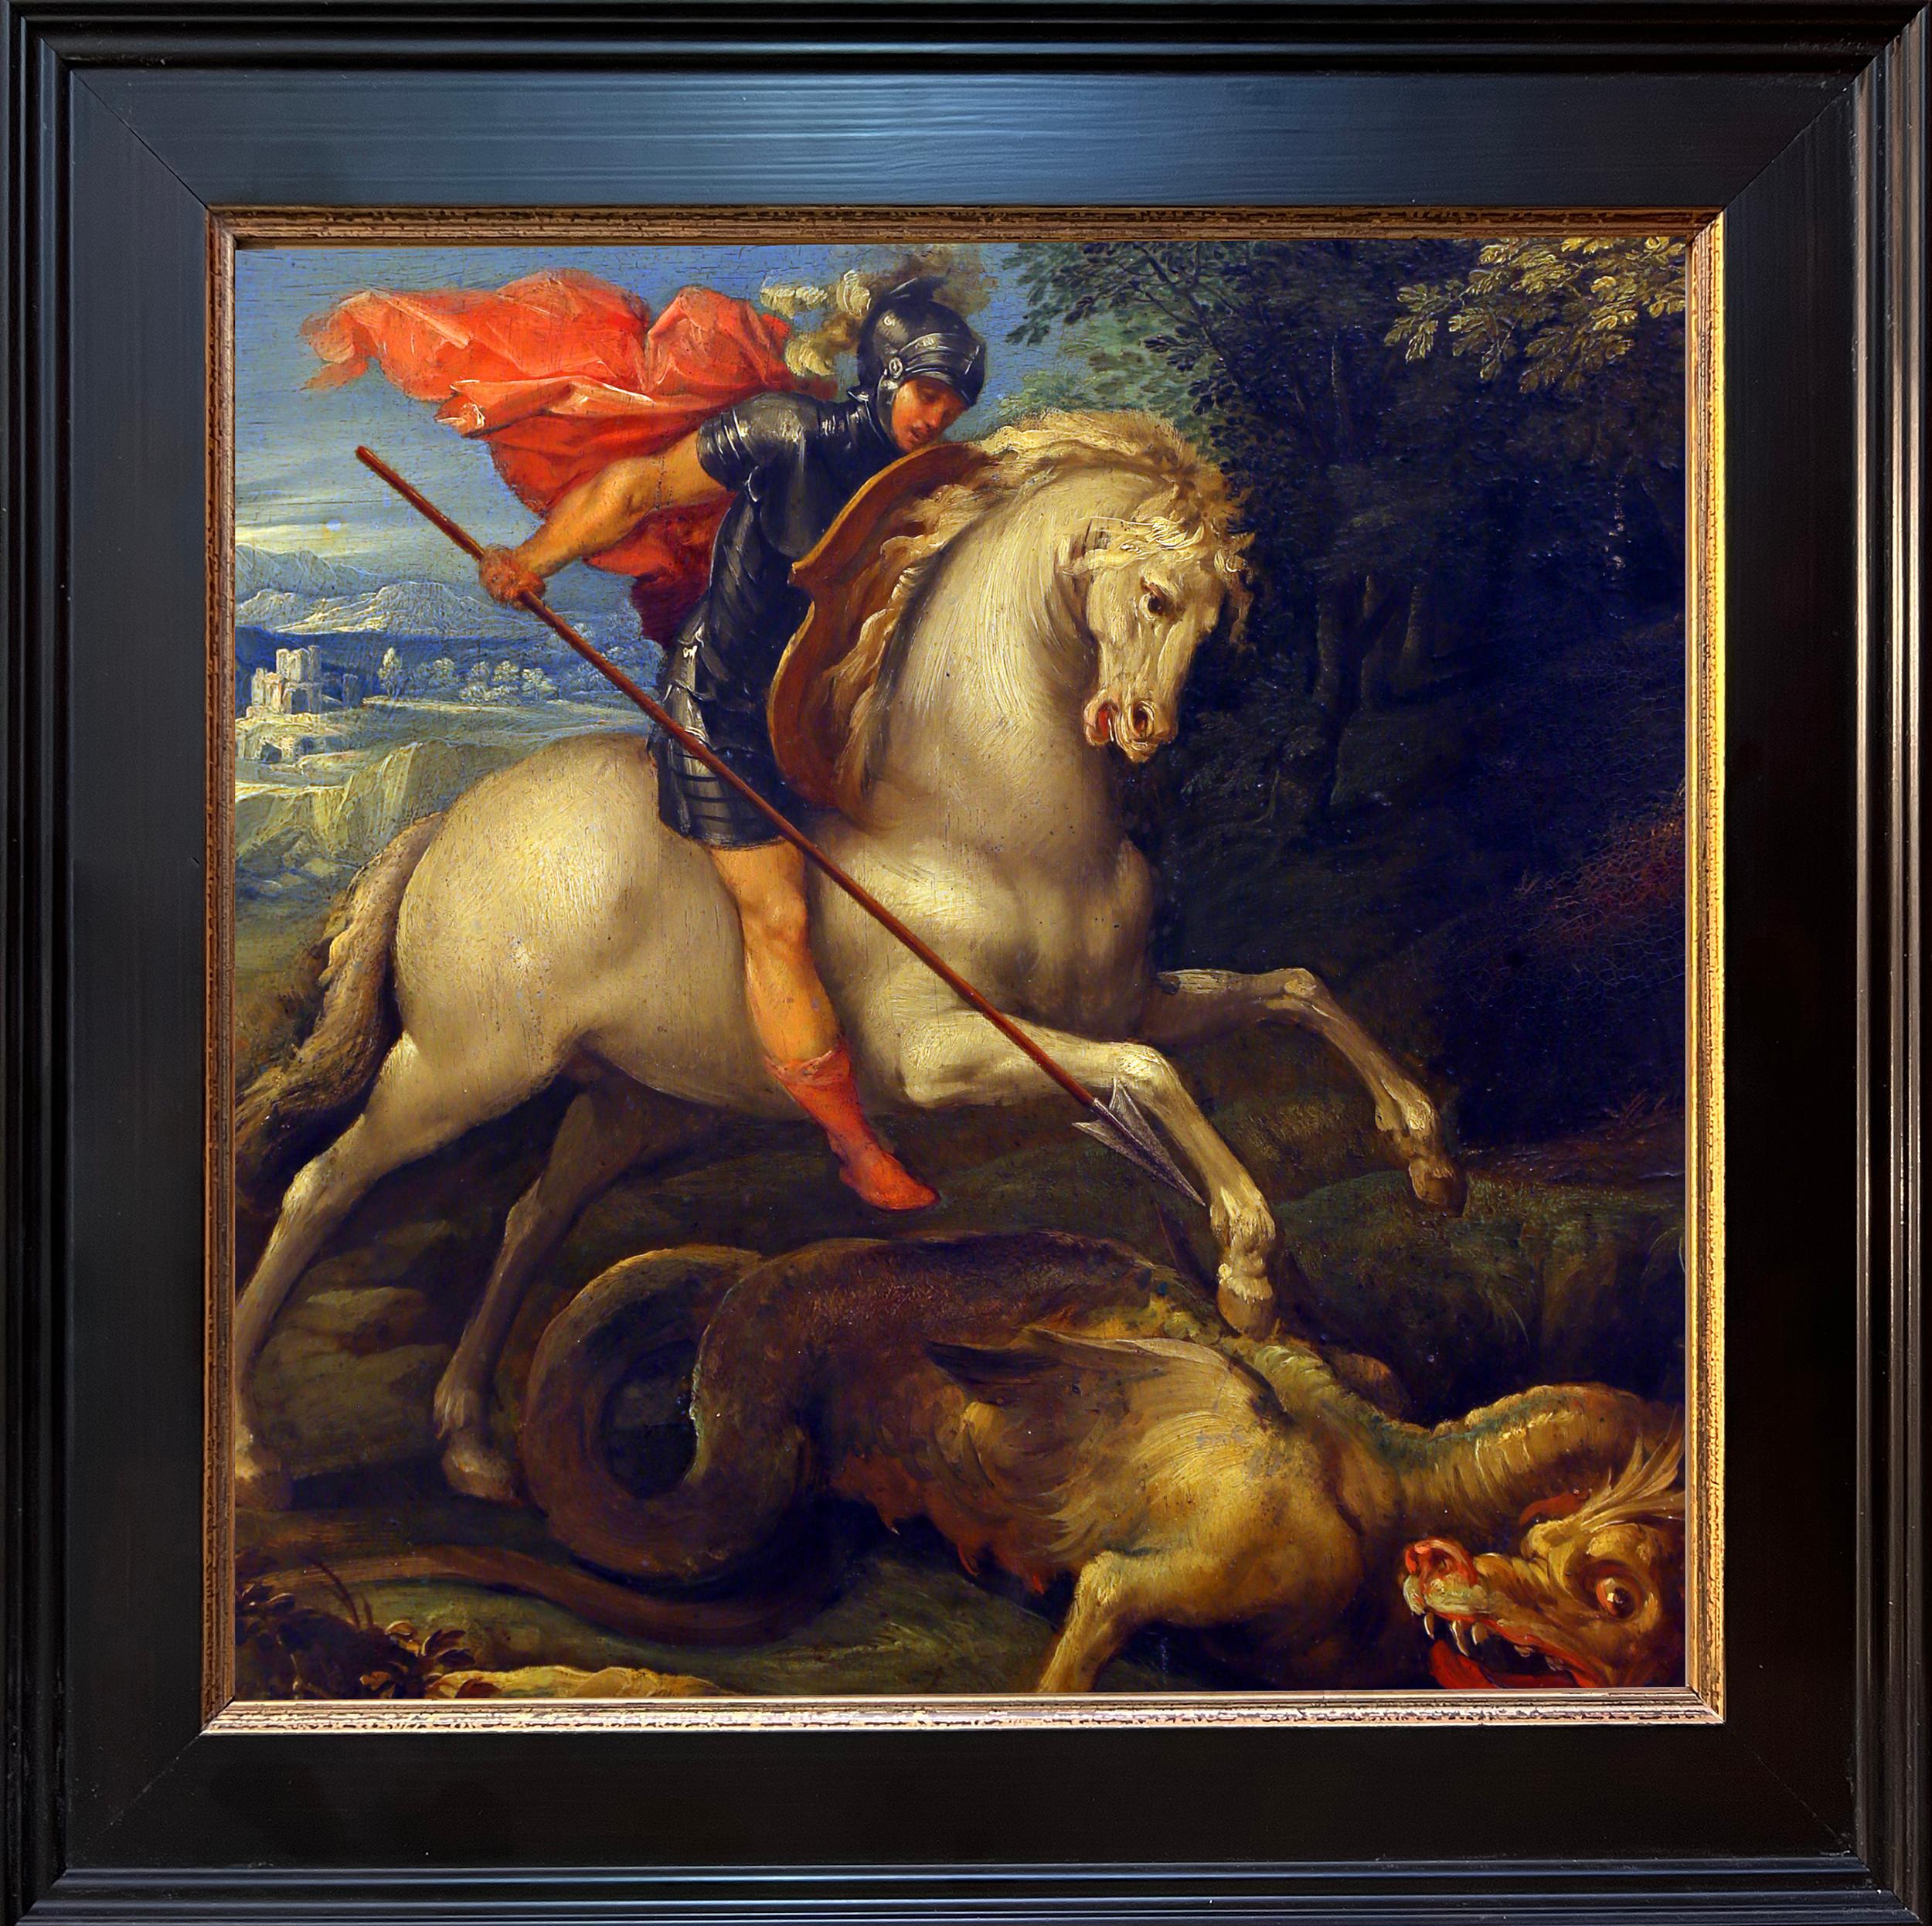 À propos de la peinture :
Saint Georges terrassant le dragon est une peinture de genre dérivée de la légende de Saint Georges, un soldat vénéré dans le christianisme qui combat et vainc un dragon. Le conte évoque un dragon qui a extorqué à un